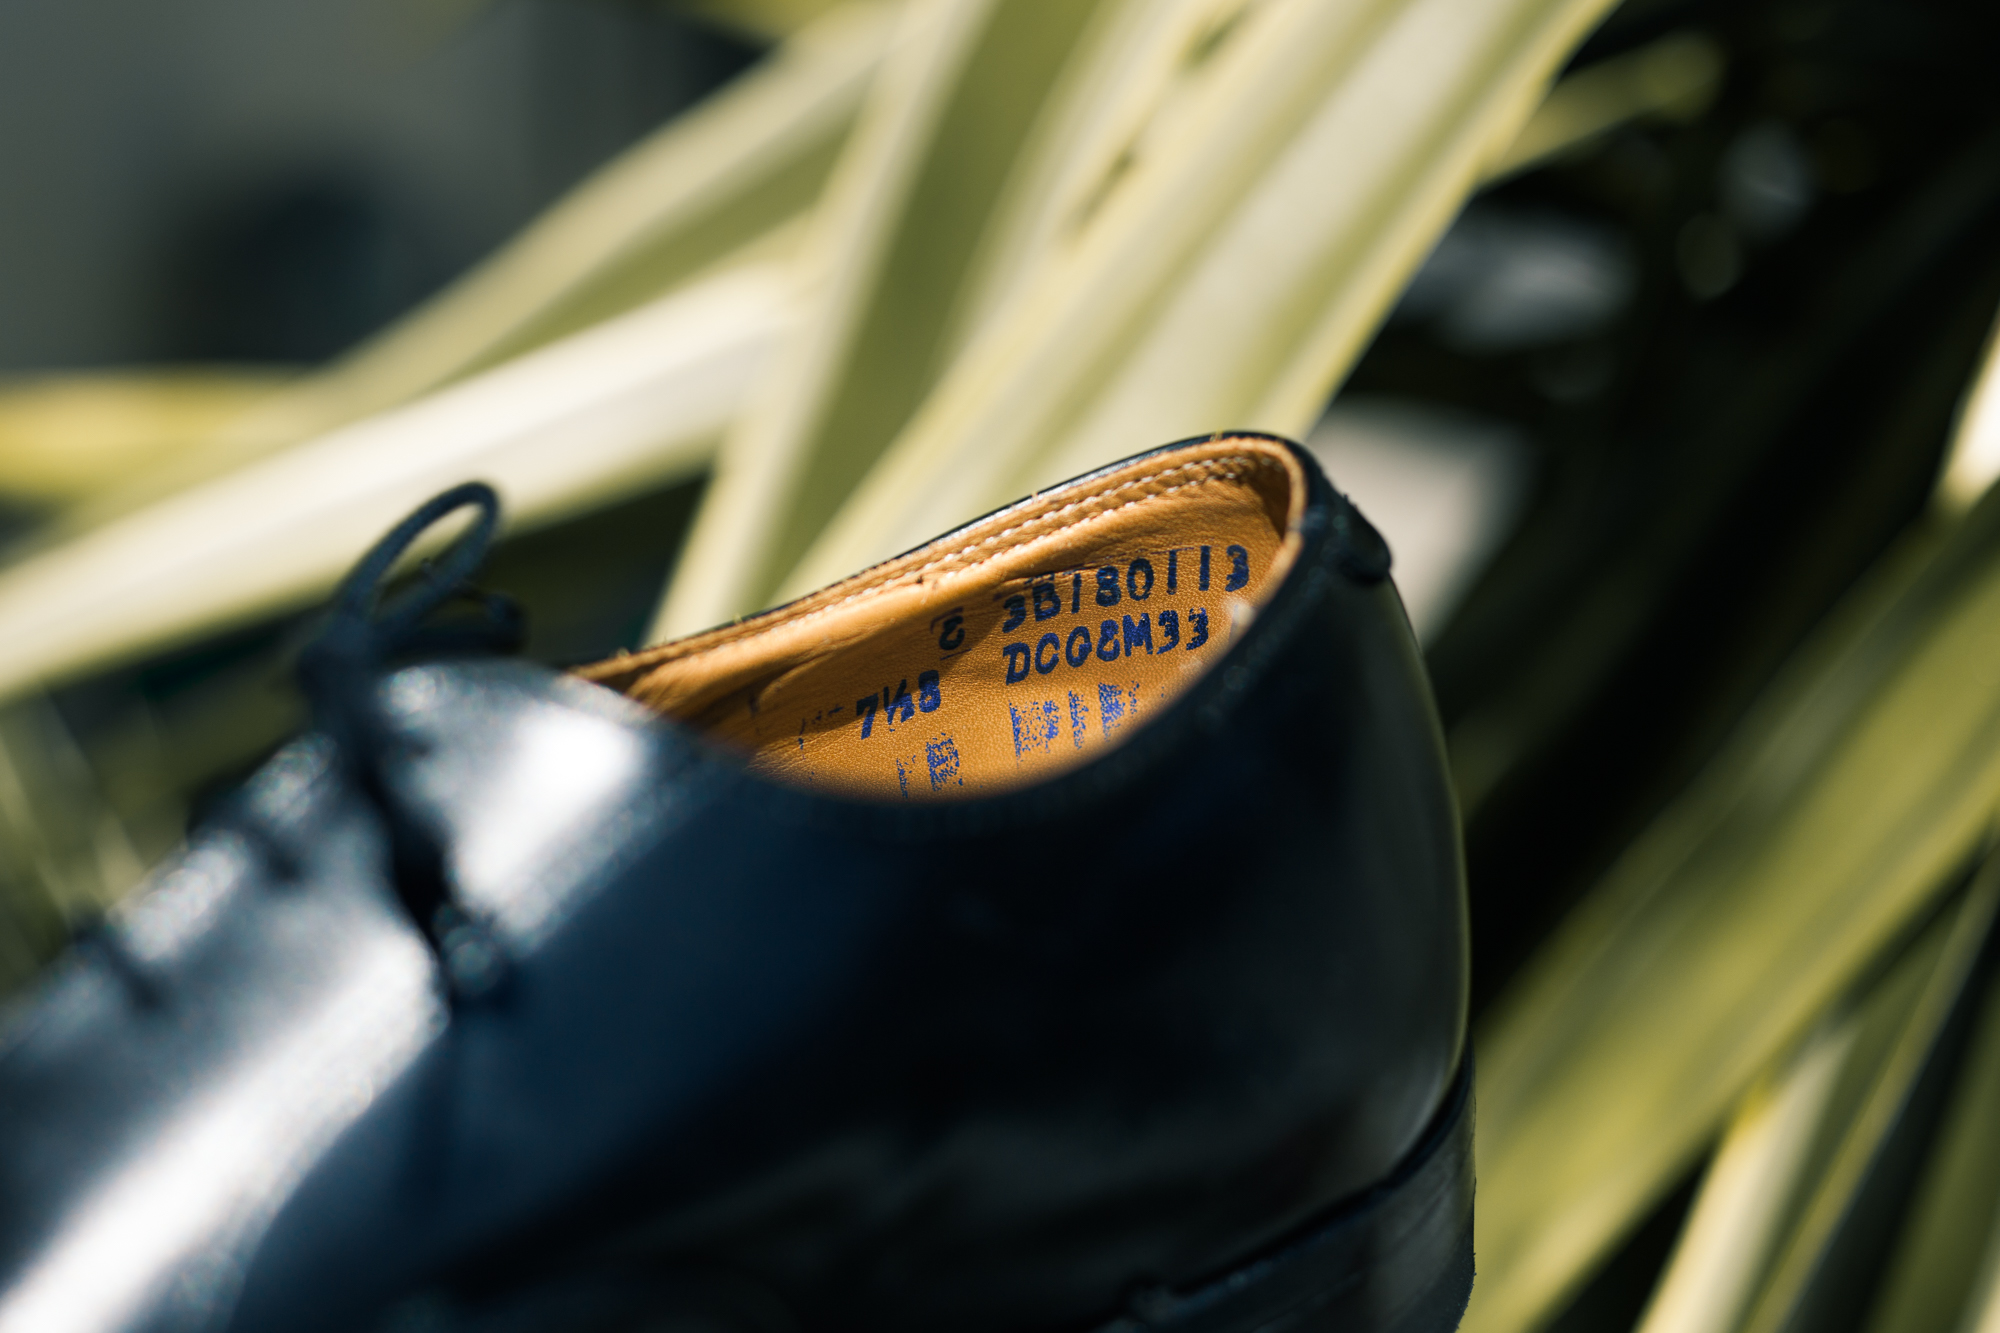 上品な佇まいが男心をくすぐるCanadian oxford shoesのご紹介。